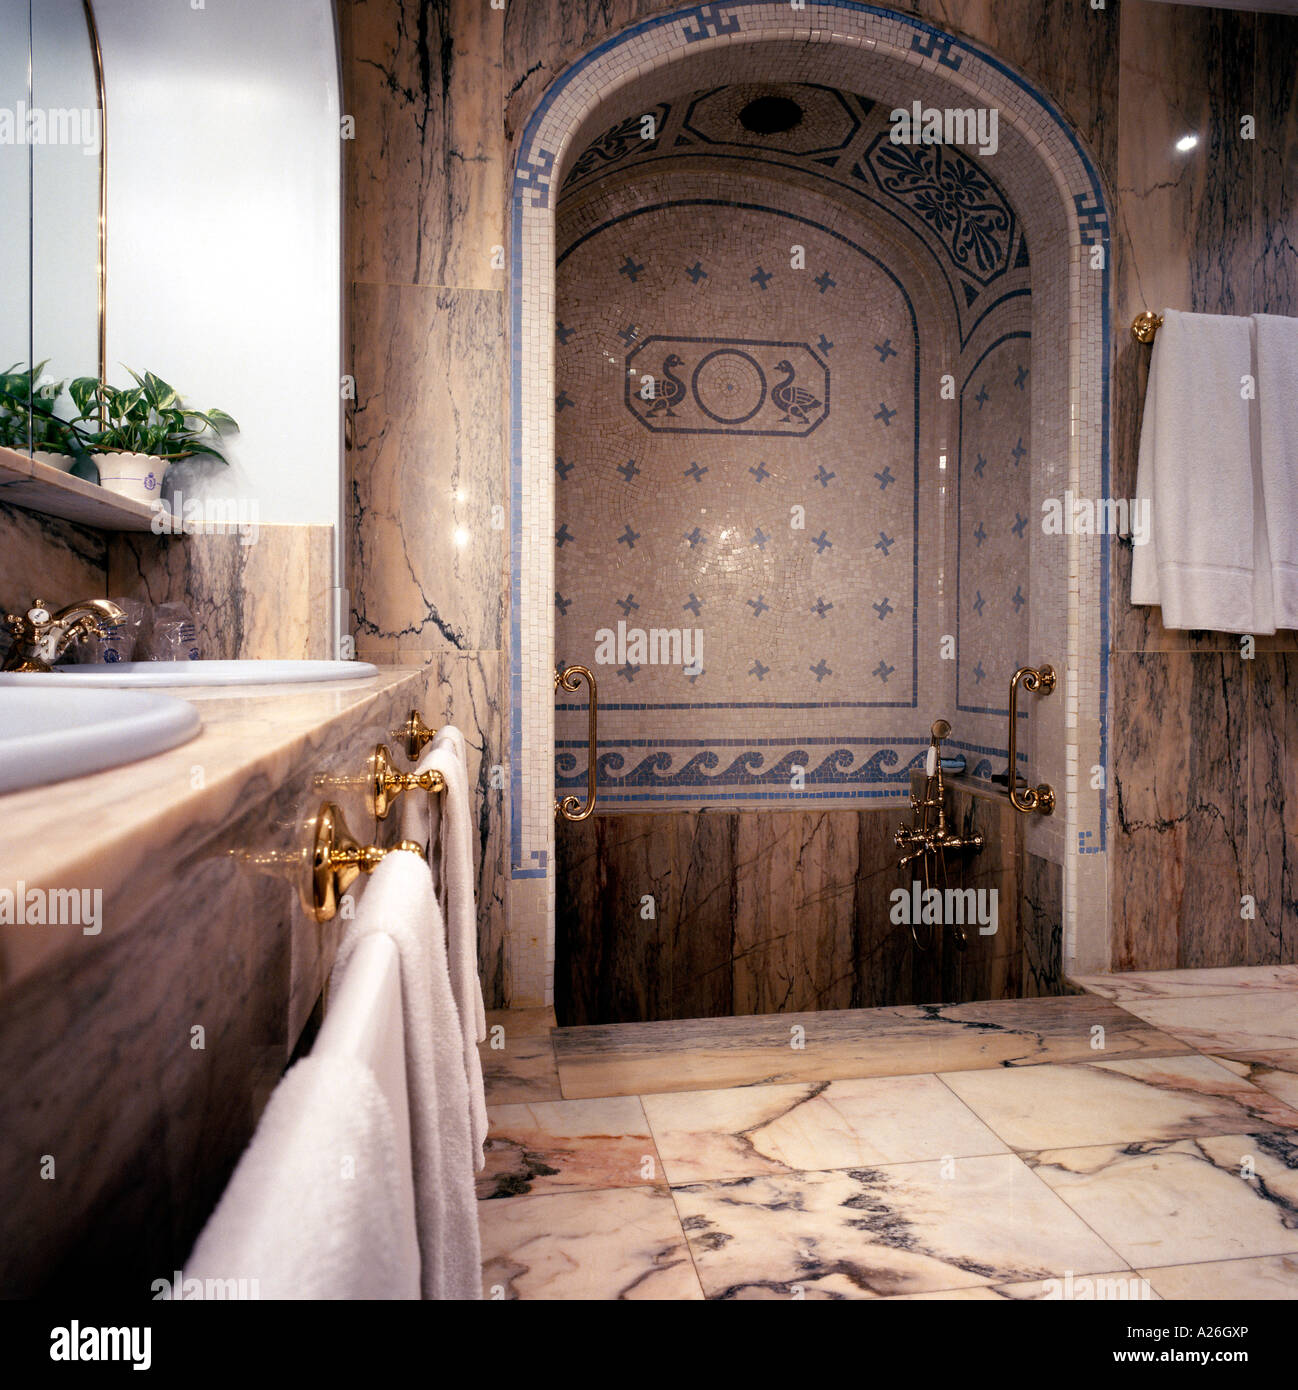 Vue d'une cabine de douche bien conçu dans une salle de bains Banque D'Images